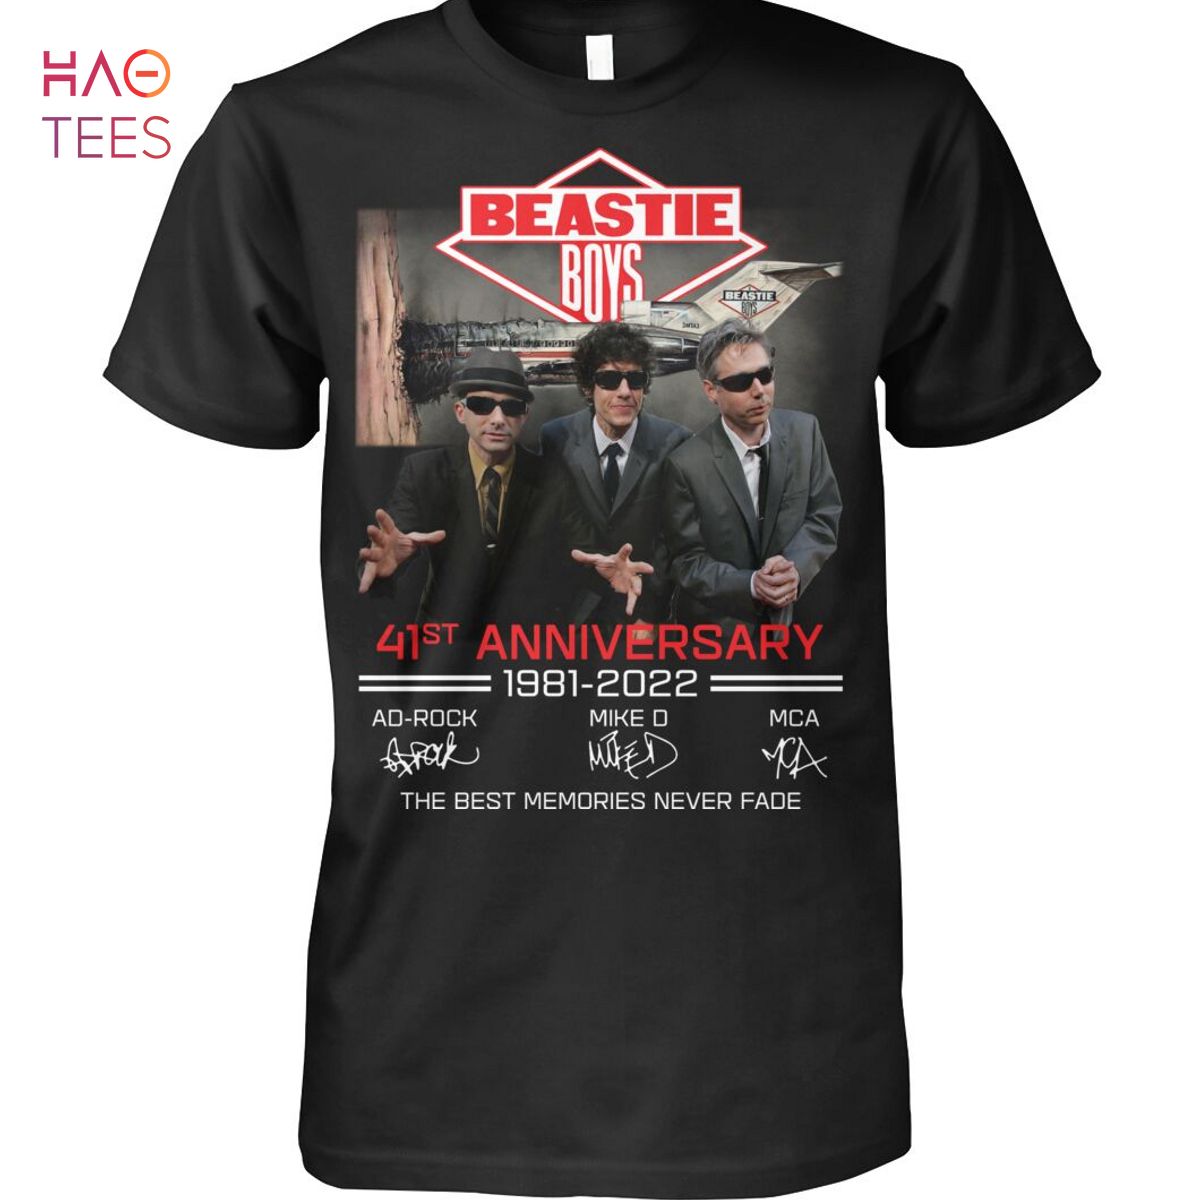 Beastie Boys 41 Anniversary 1981-2022 Shirt